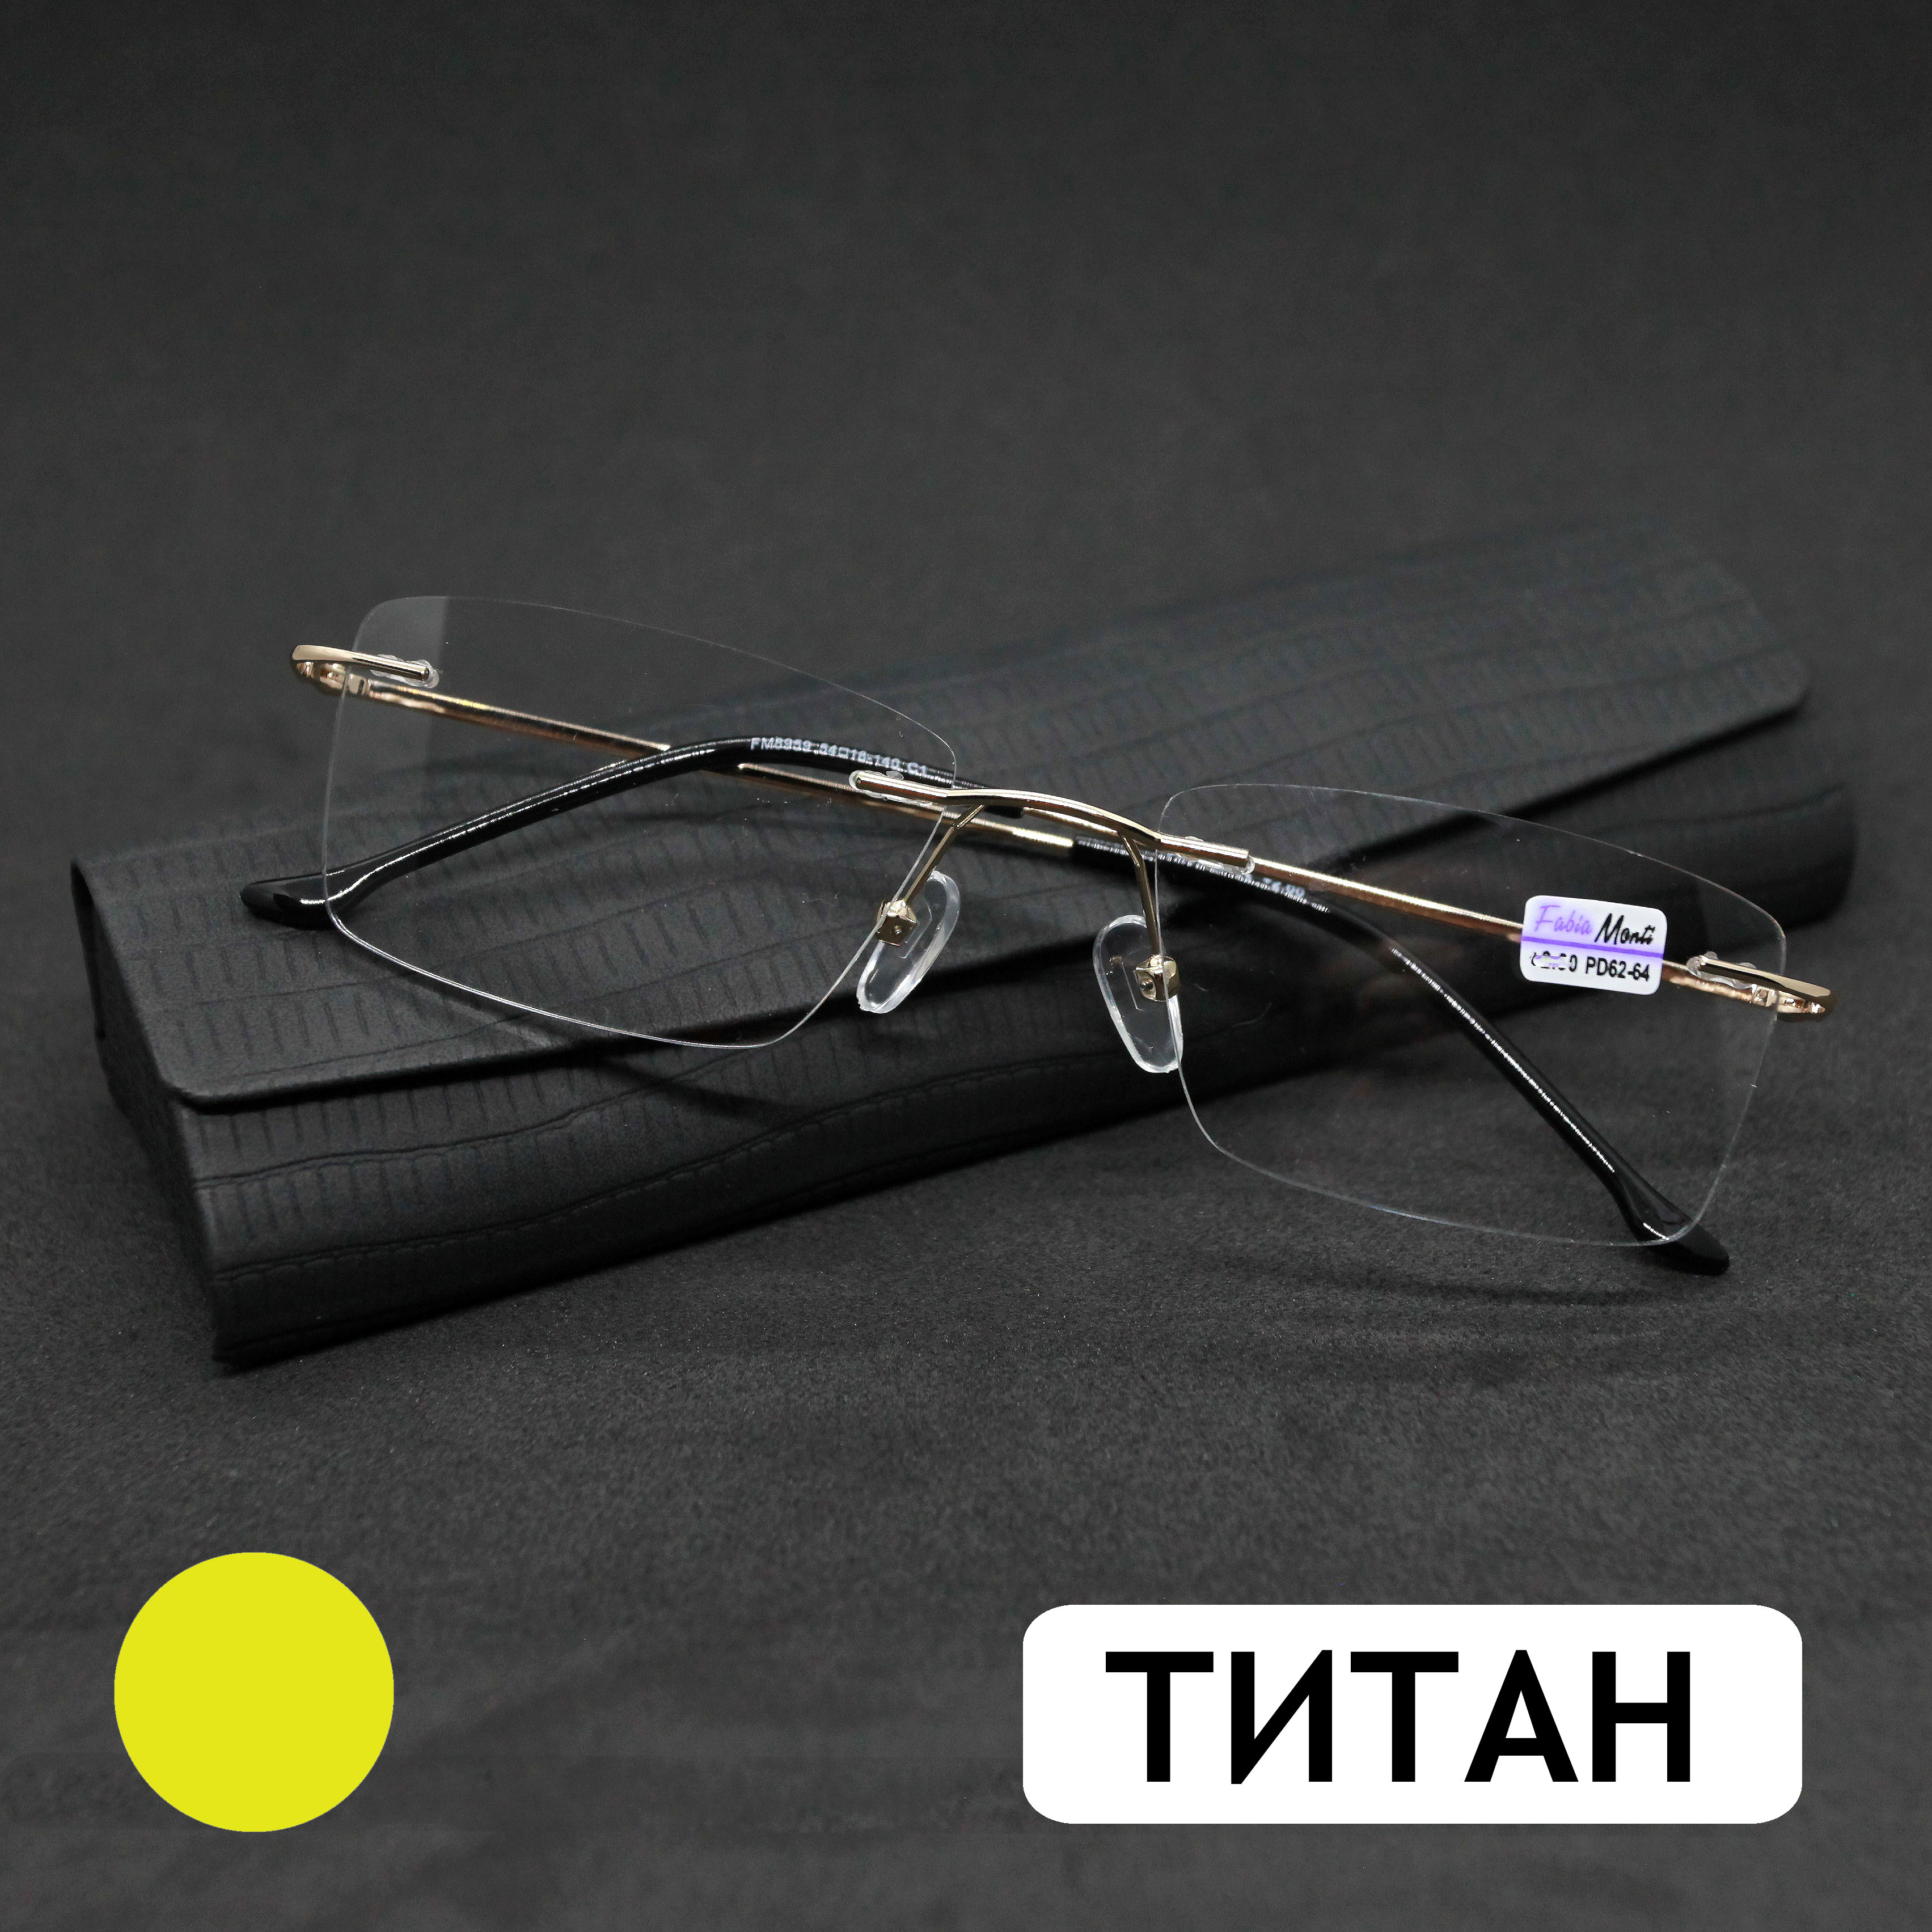 Безободковые очки FM 8959 +3.00, c футляром, оправа титан, золотые, РЦ 62-64